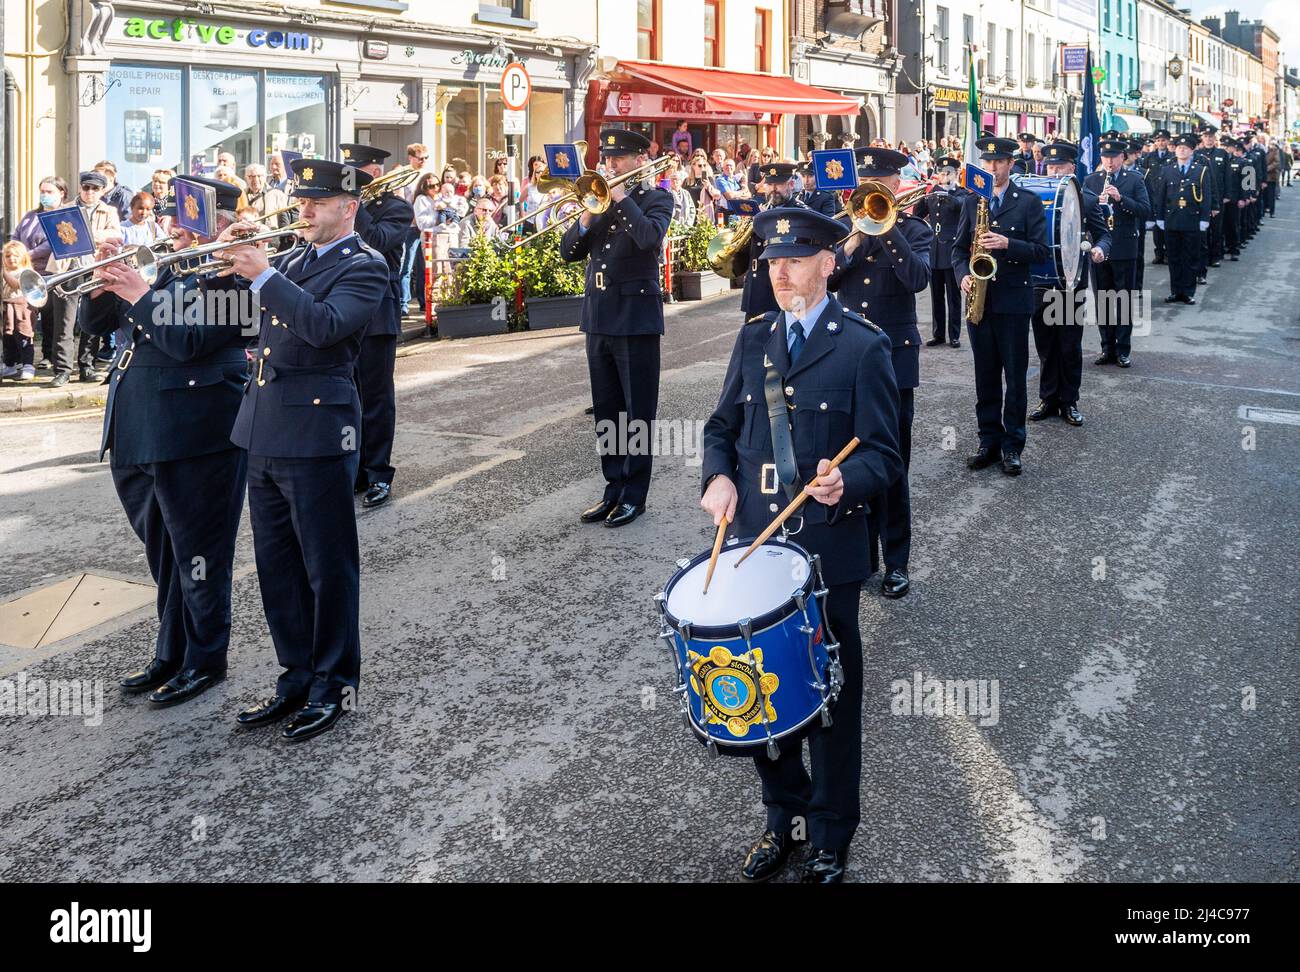 Un groupe de Garda Síochána (police irlandaise) se produit lors d'un événement à Bandon, dans l'ouest de Cork, en Irlande. Banque D'Images